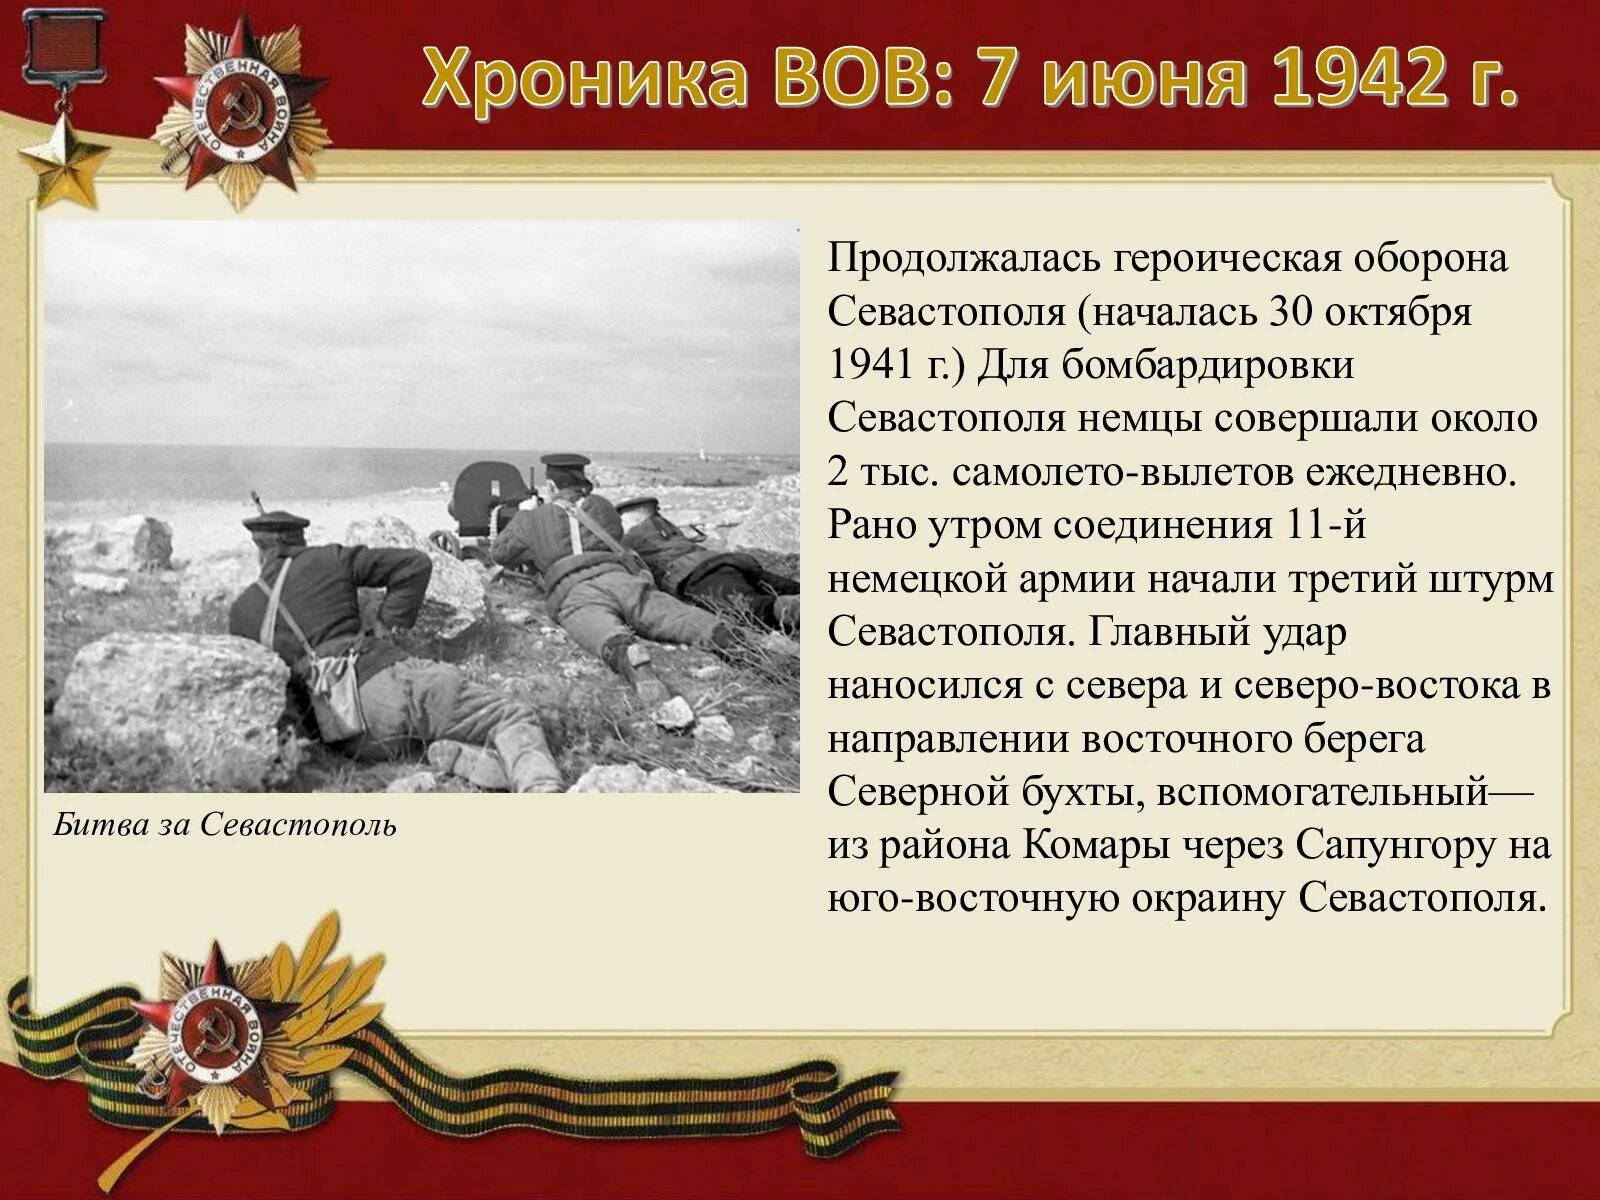 Октябрь 1941 начало обороны. Оборона Севастополя 1942. 30 Октября 1941 года началась оборона Севастополя. Штурм Севастополя 1941-1942. Штурм Севастополя 1942.